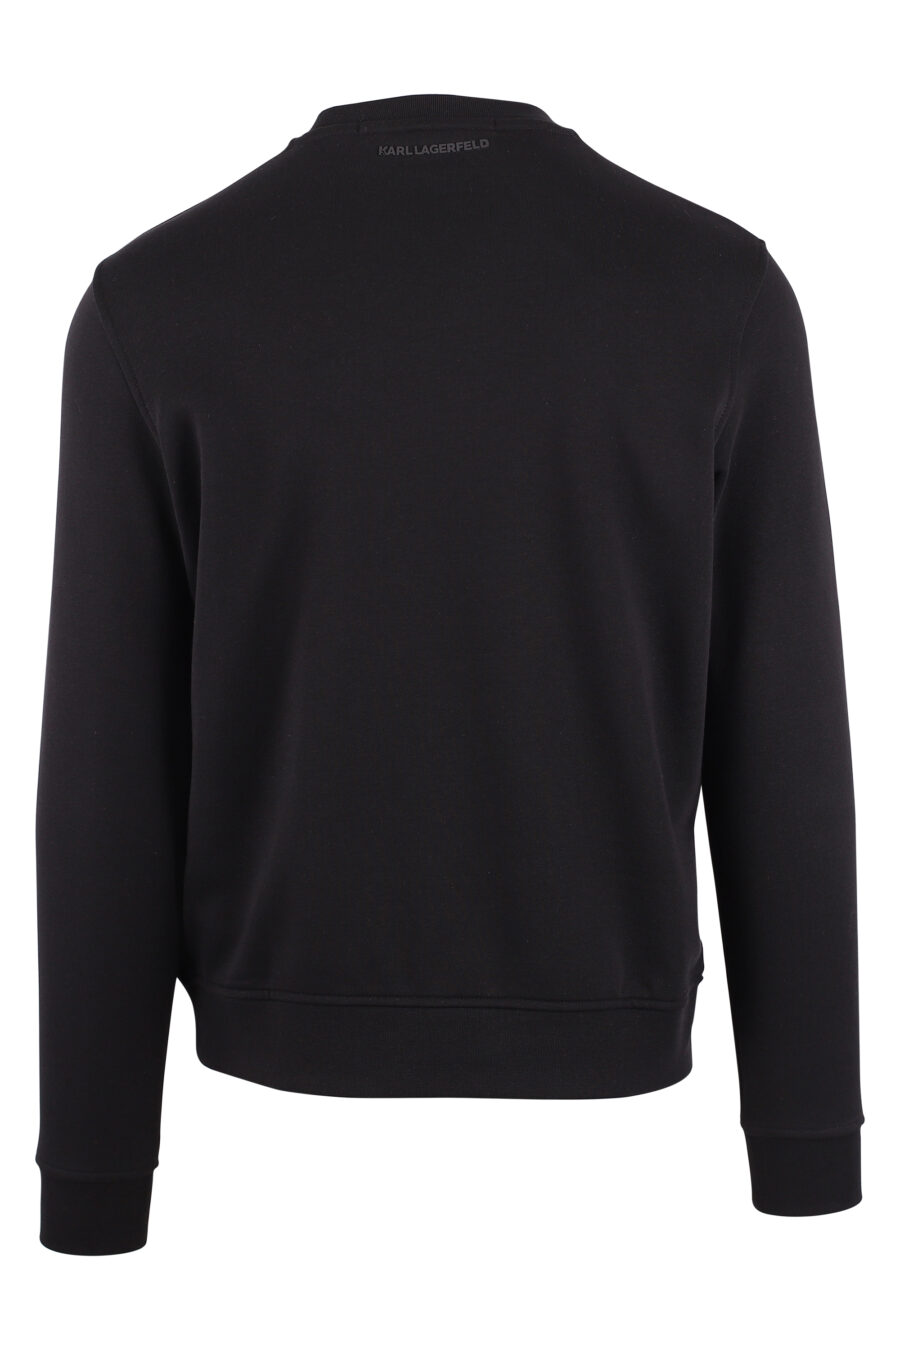 Schwarzes Kapuzensweatshirt mit Reißverschluss und weißem Logoaufnäher - IMG 9440